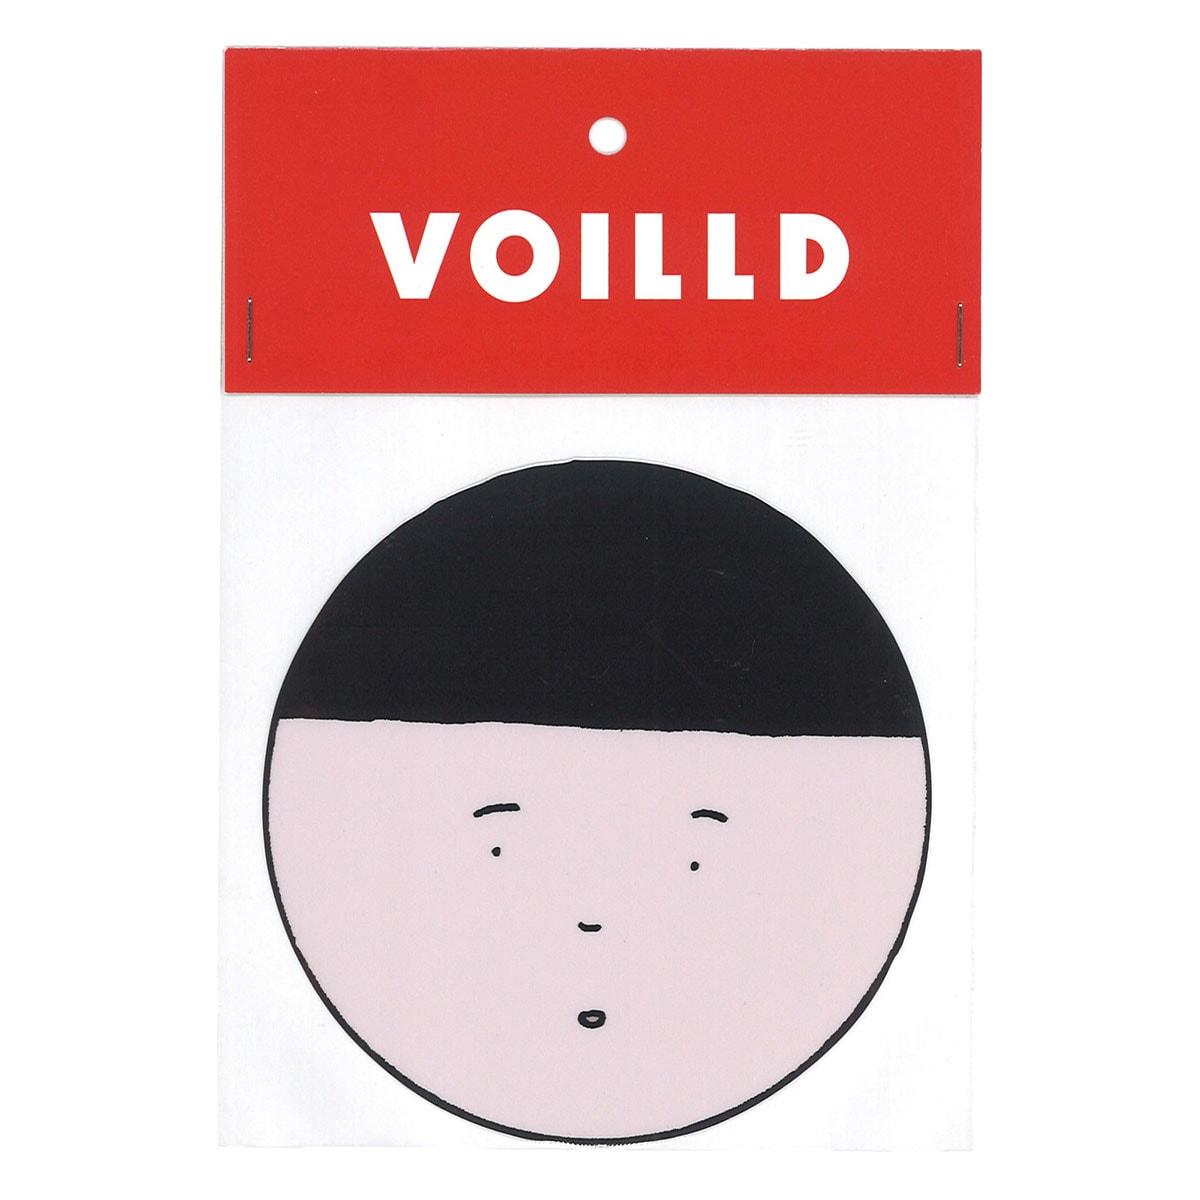 中目黒のアートギャラリー・VOILLDの公式オンラインショップがオープン - Slide:9